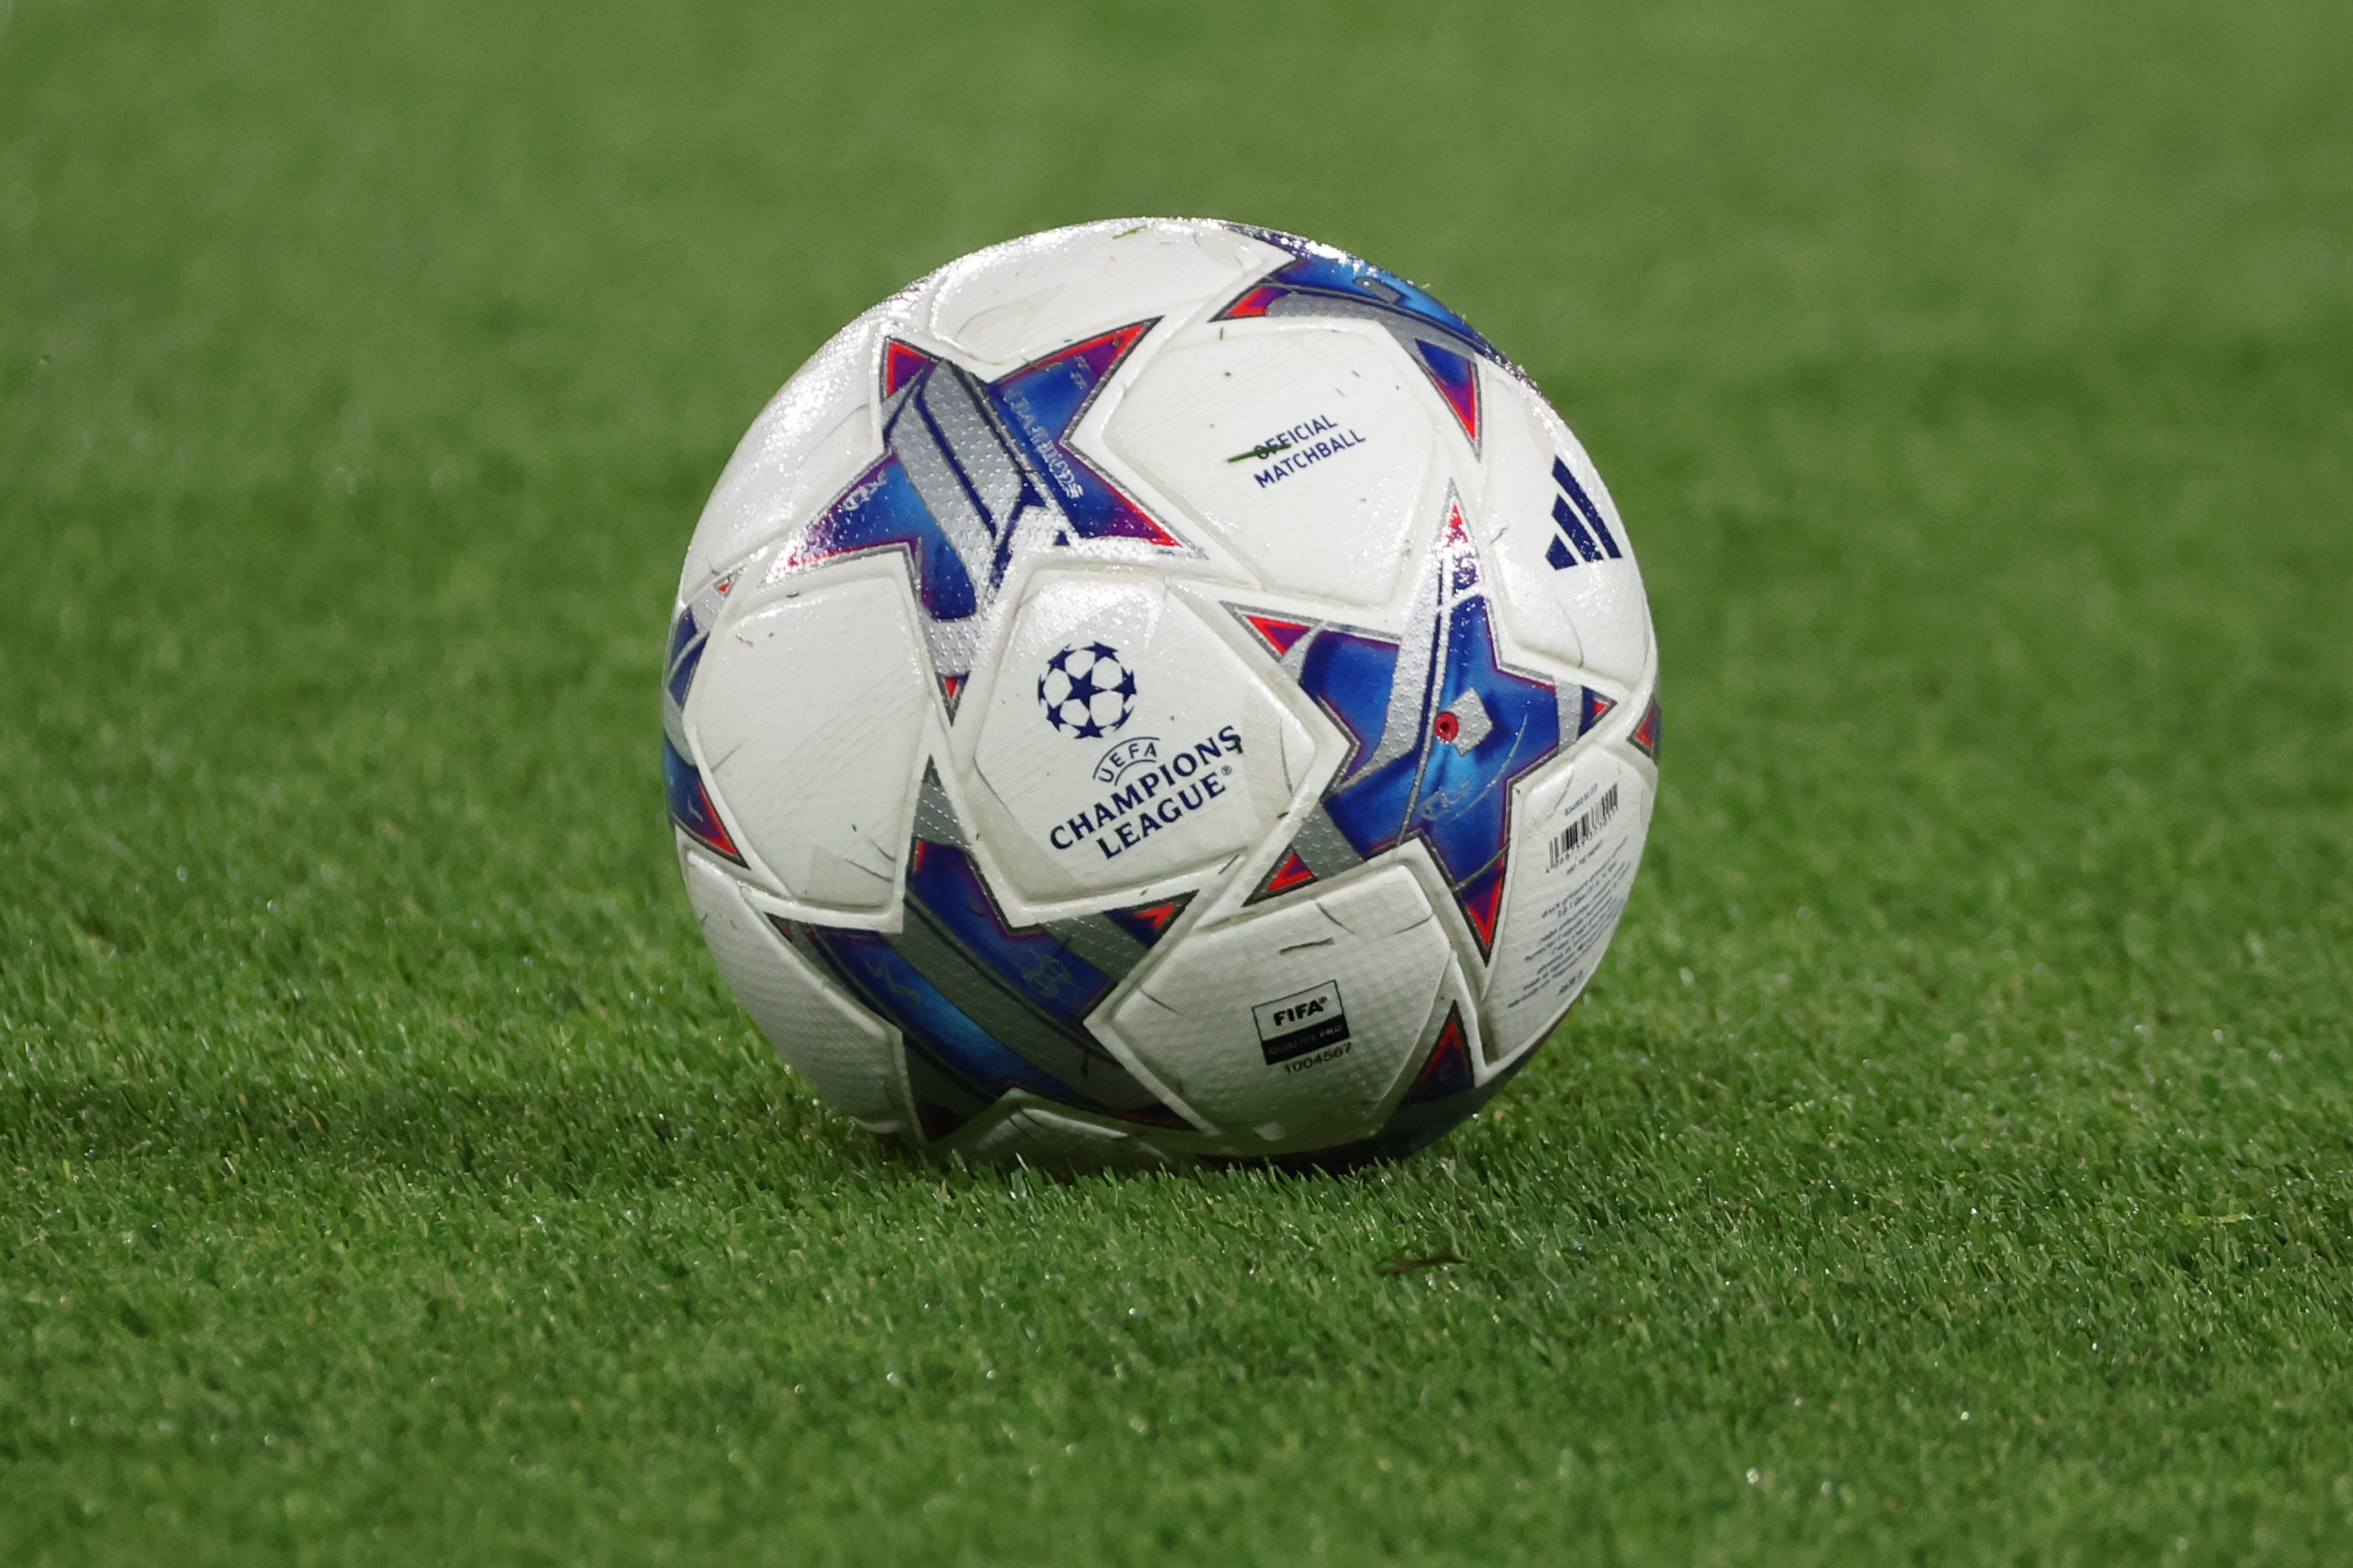 Le nouveau ballon de la Ligue des Champions, utilisé lors de PSG-Dortmund. Photo LP/Arnaud Journois

PHOTO LE PARISIEN / ARNAUD JOURNOIS